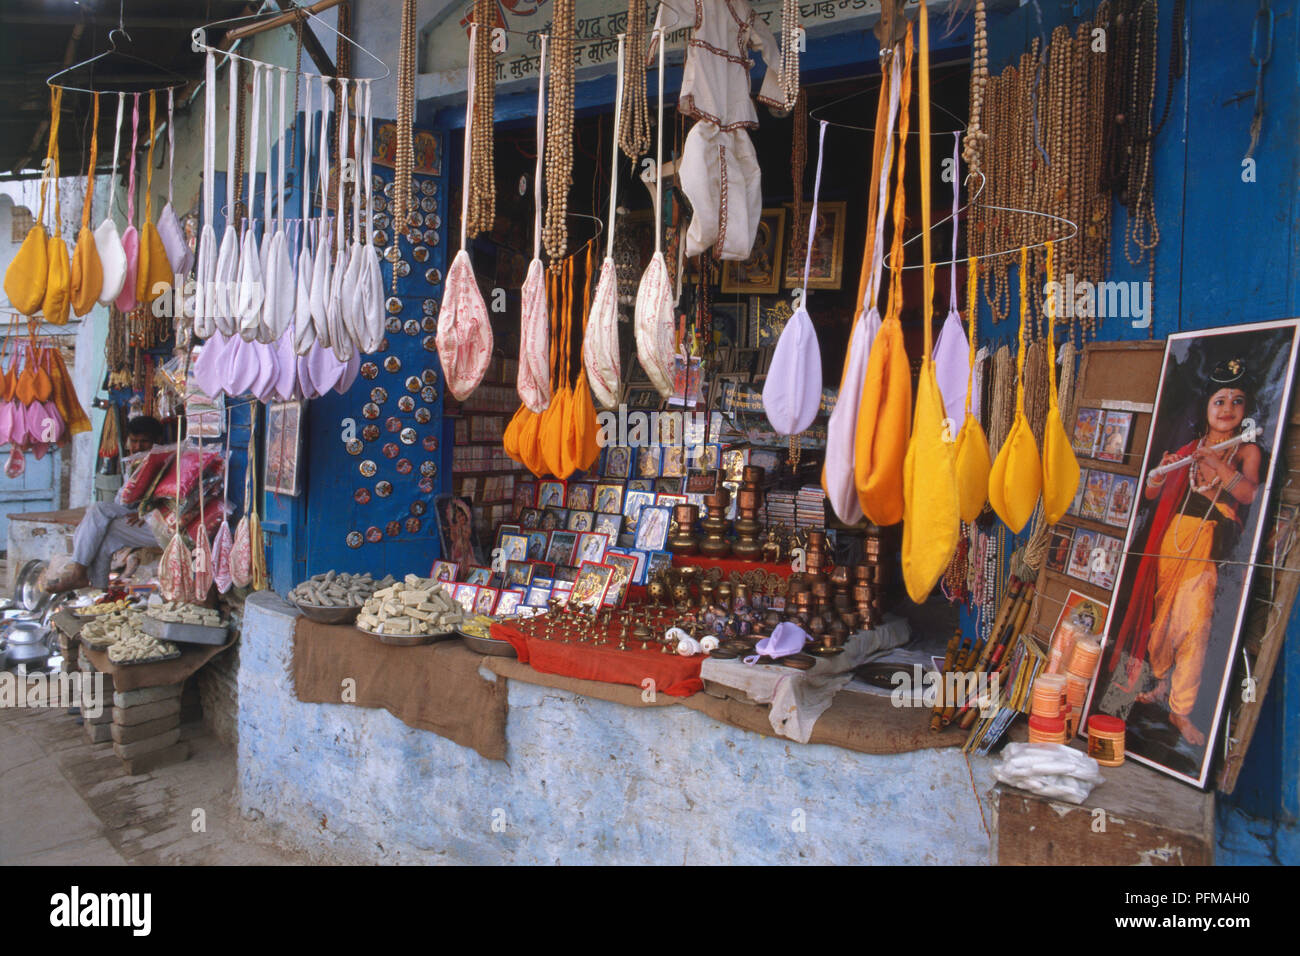 India, Govardhan, ciudad peregrina, puesto de venta de artículos de tela de colores brillantes, abalorios, adornos e imágenes religiosas. Foto de stock